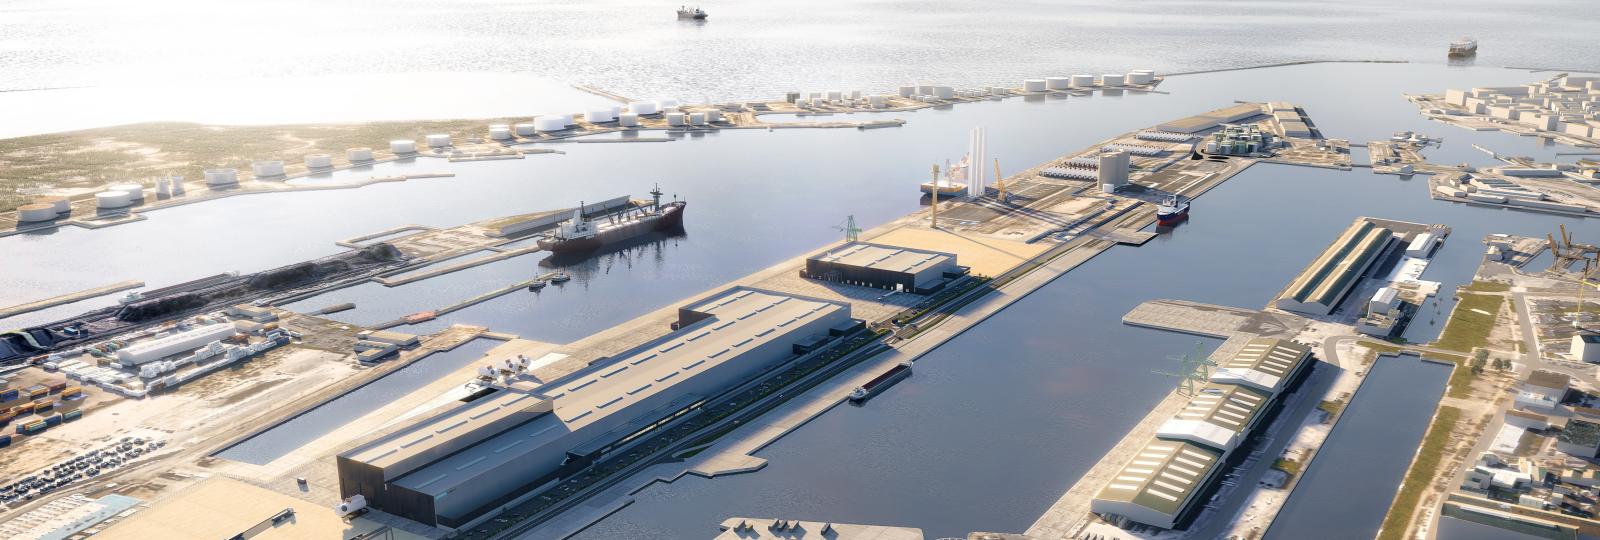 Le port du Havre se prépare pour l’usine d’éoliennes Siemens-Gamesa